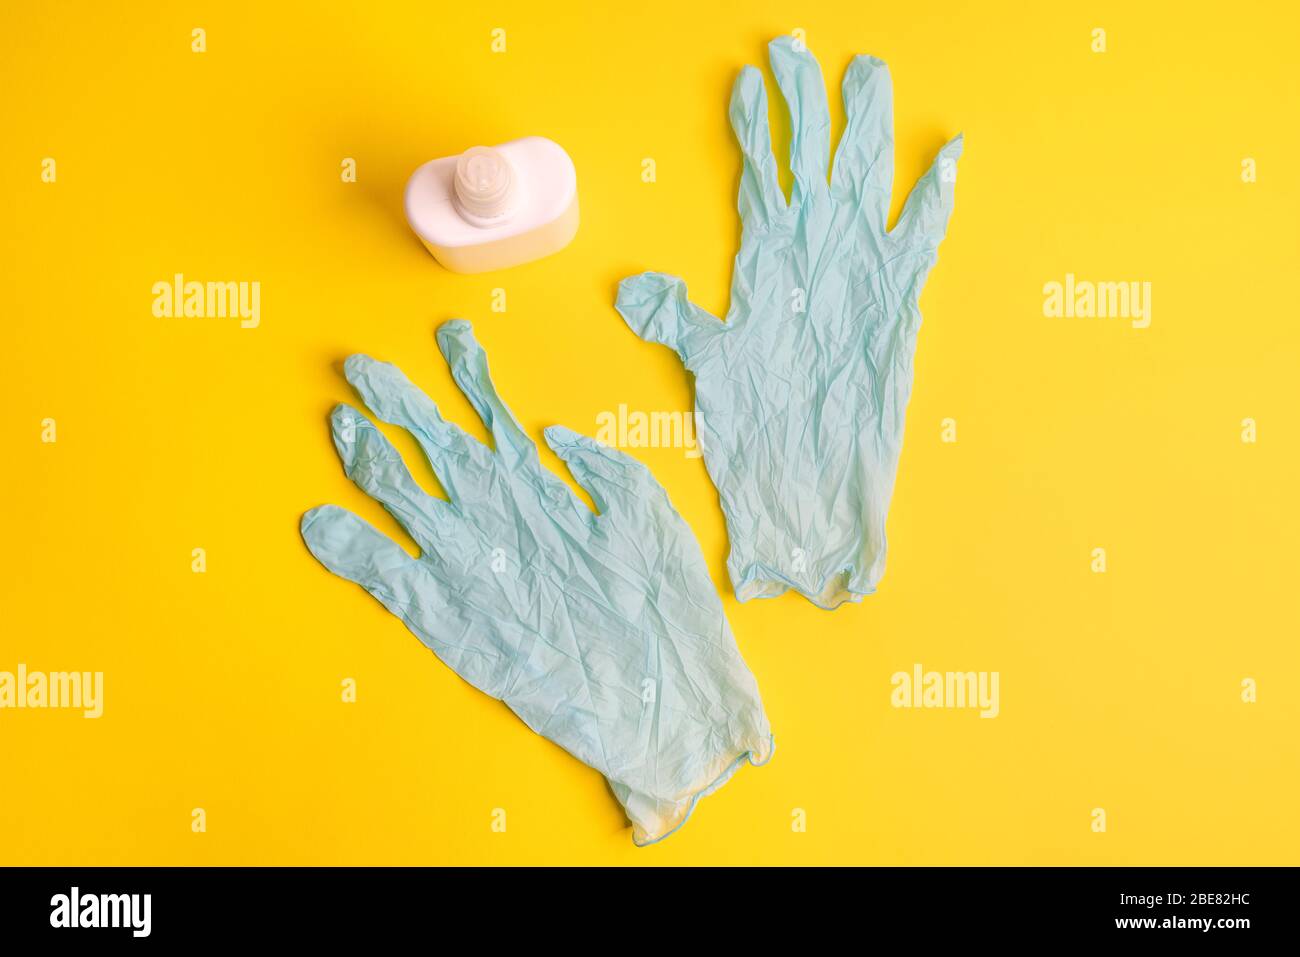 gants et désinfectant en latex jetables sur une surface colorée Banque D'Images